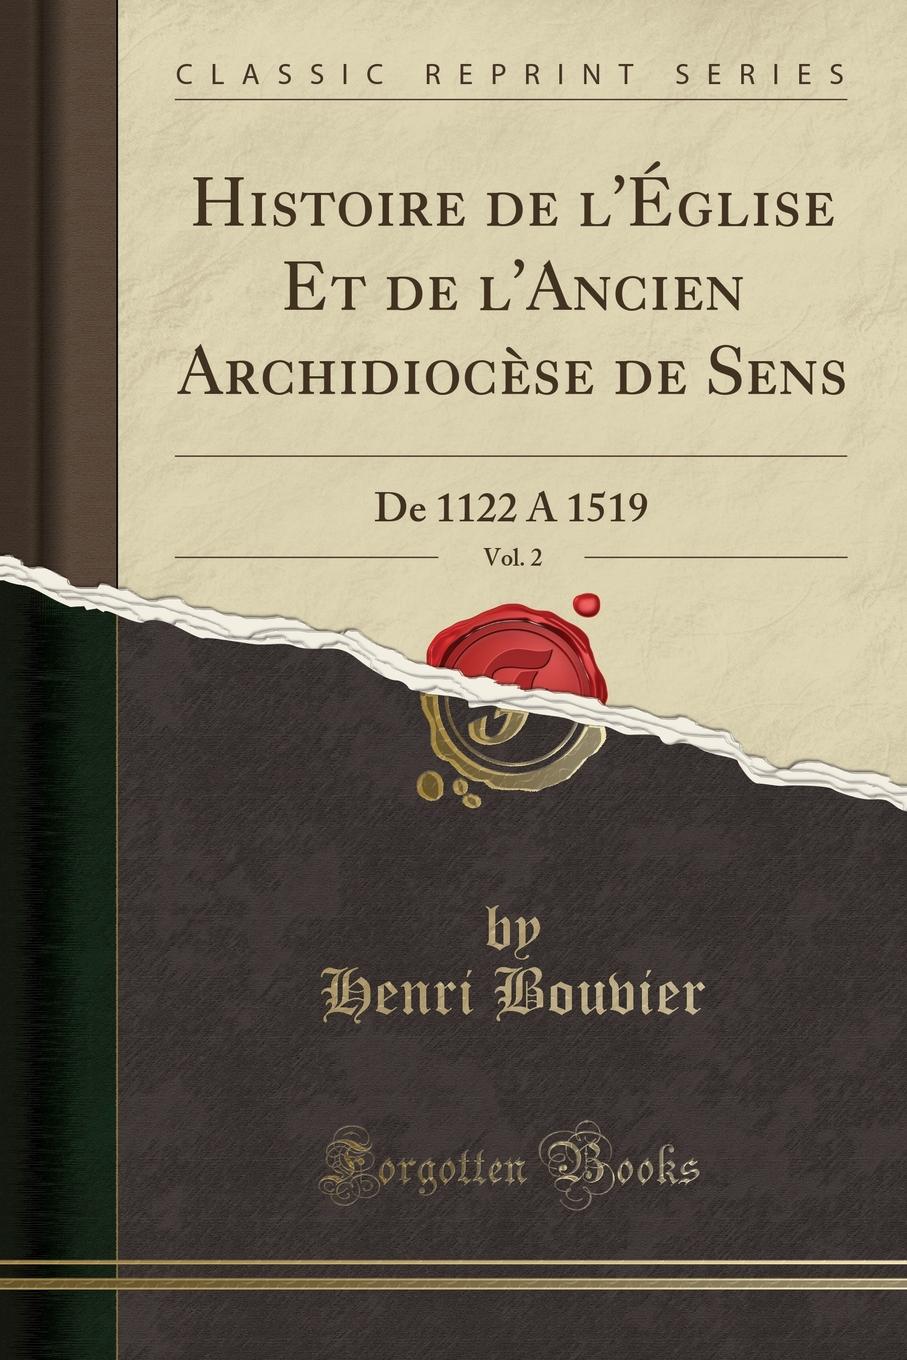 Henri Bouvier Histoire de l.Eglise Et de l.Ancien Archidiocese de Sens, Vol. 2. De 1122 A 1519 (Classic Reprint)